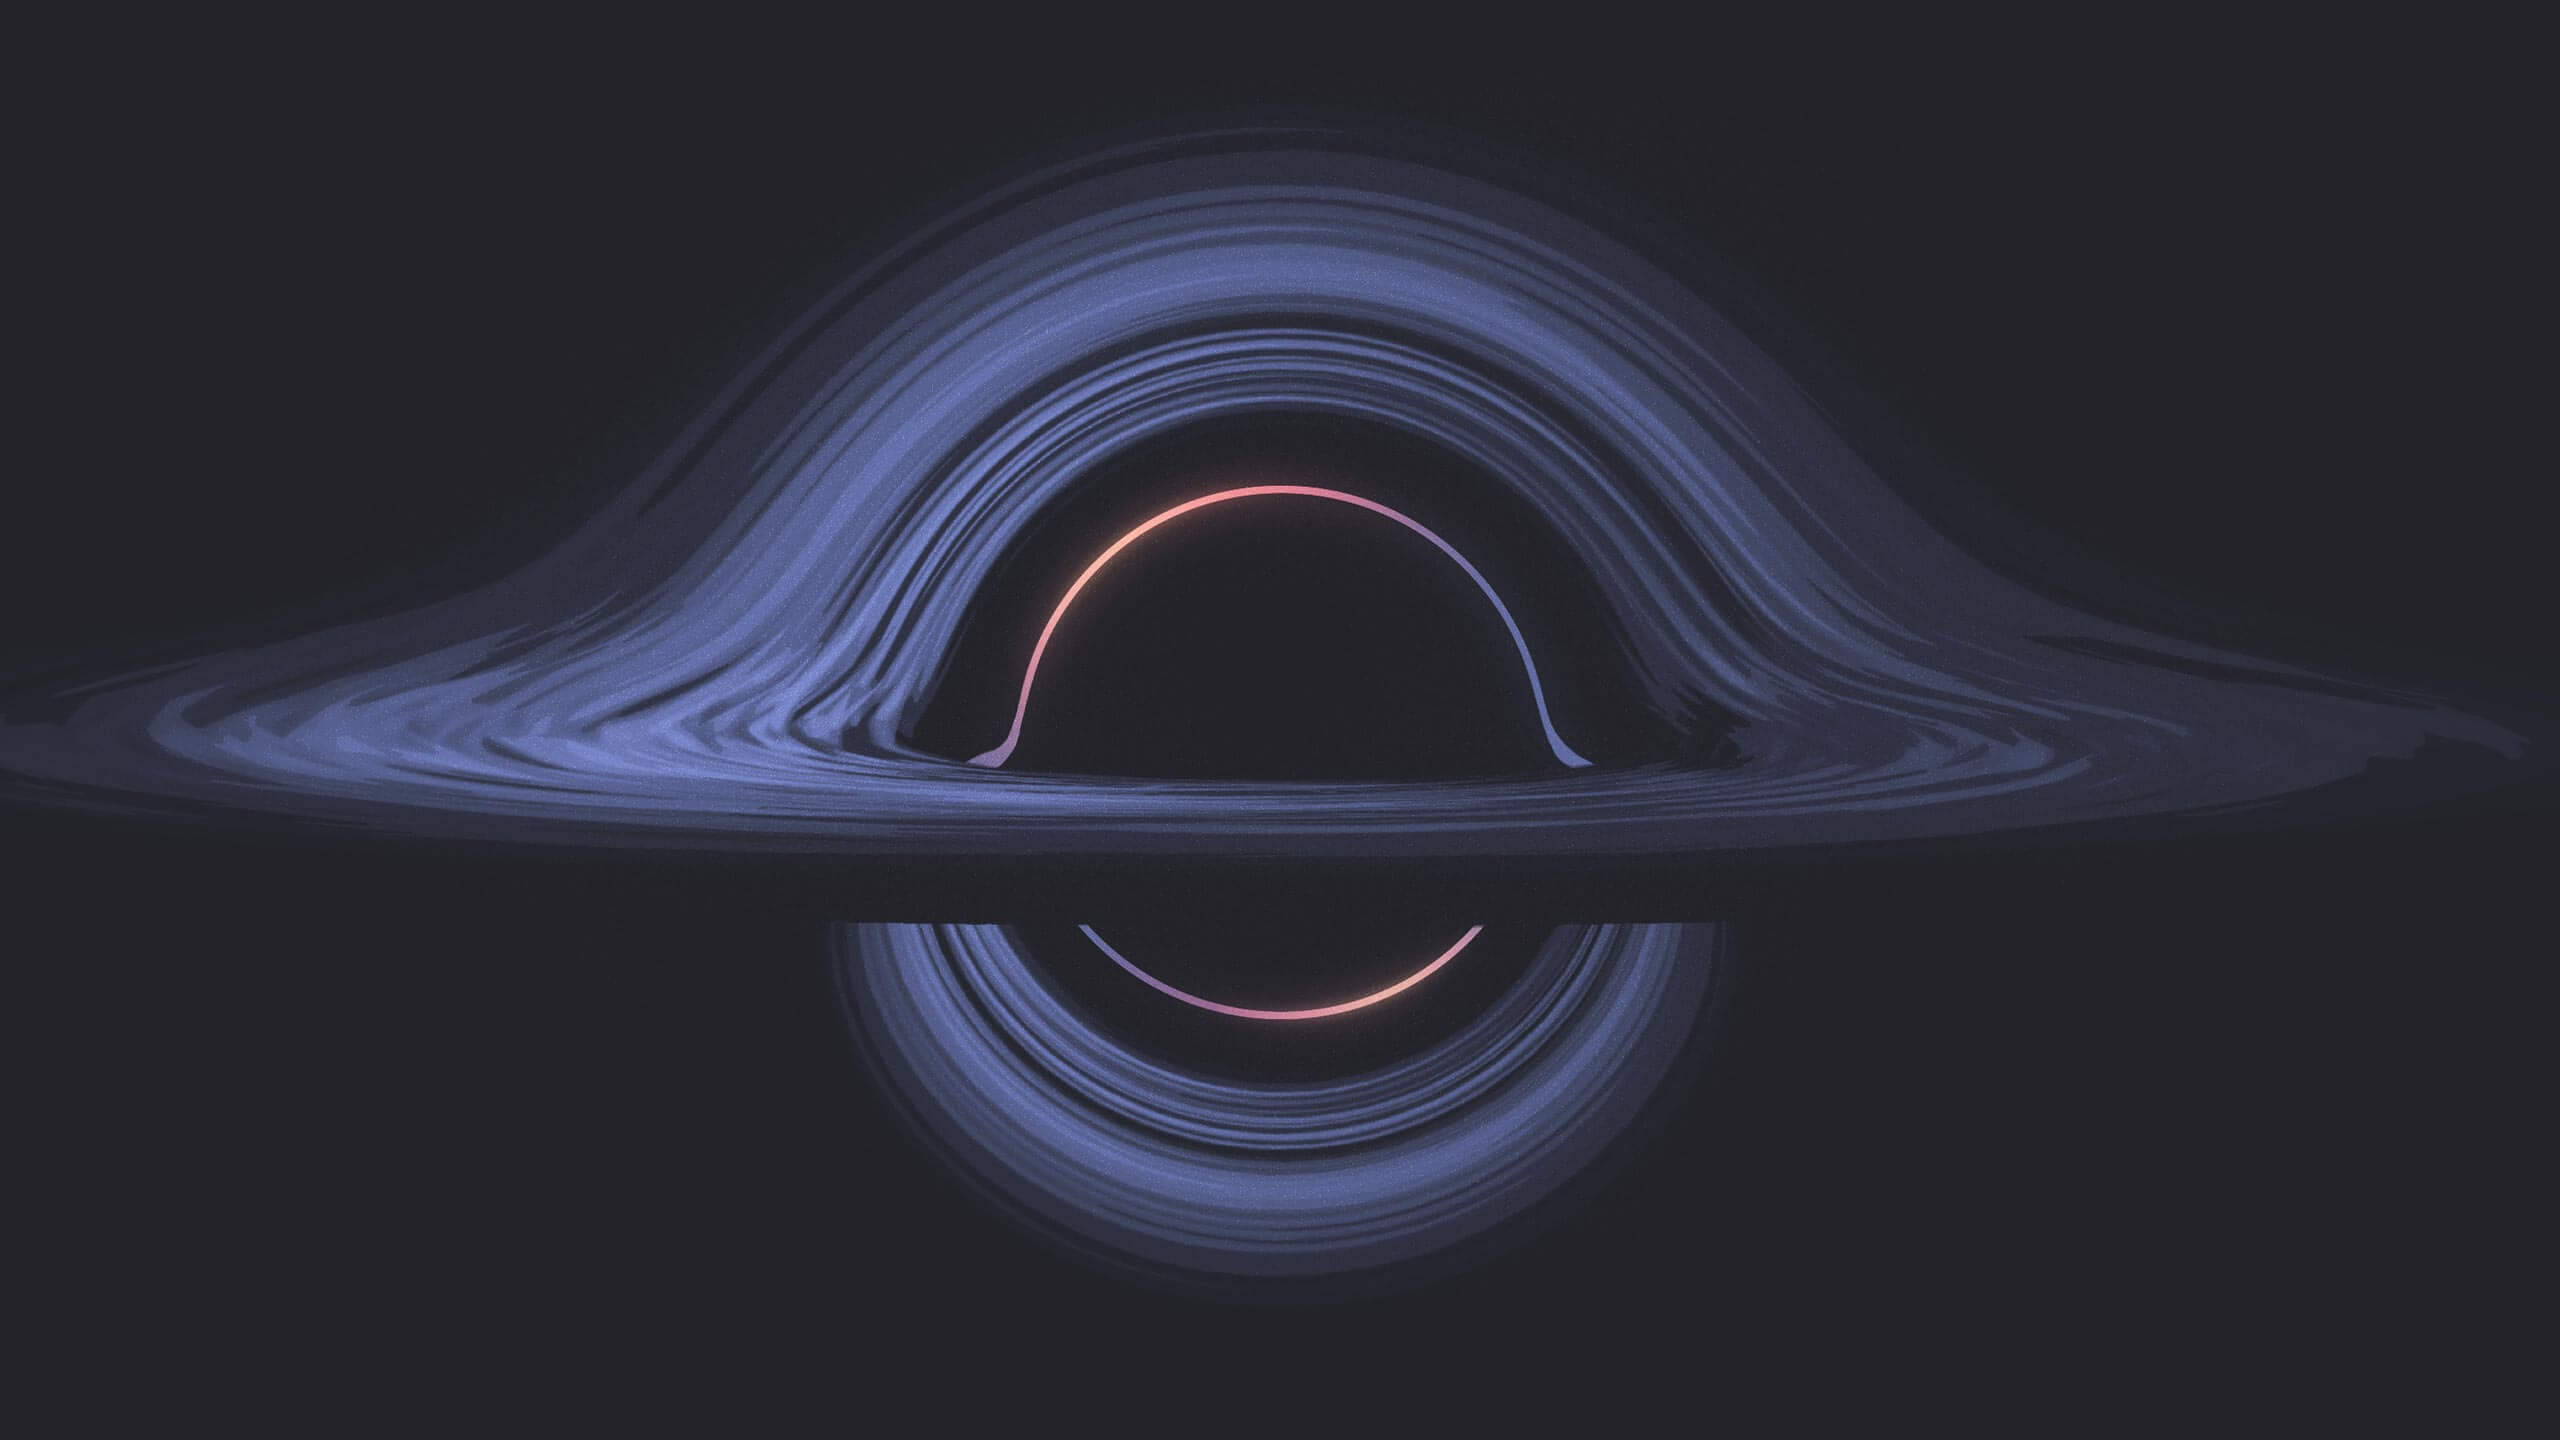 Photon Ring lt;pgt;Черные дыры - одни из самых загадочных объектов на просторах Вселенной. И хотя физики давно догадывались об их существовании, статус реальных космических обитателей черные дыры получили несколько лет назад. Открытие гравитационных волн в 2017 году и первый снимок черной дыры (2019 год) ознаменовали собой новую эру космических исследований - в самом ближайшем будущем мы узнаем много нового о Вселенной и существующих на ее просторах объектах. Так, недавно в журнале Physical Review Letters вышла статья, авторы которой утверждают что эти космические монстры обладают уникальными и причудливыми квантовыми свойствами. Новое исследование имеет отношение к теории квантовой гравитации - одной из нерешенных загадок современной науки. В основе работы лежит компьютерное моделирование - с его помощью физики обнаружили что черные дыры обладают свойствами, характерными для квантовых частиц. Удивительно, но исследователи полагают, что эти космические монстры могут быть одновременно маленькими и большими, тяжелыми и легкими, мертвыми и живыми.